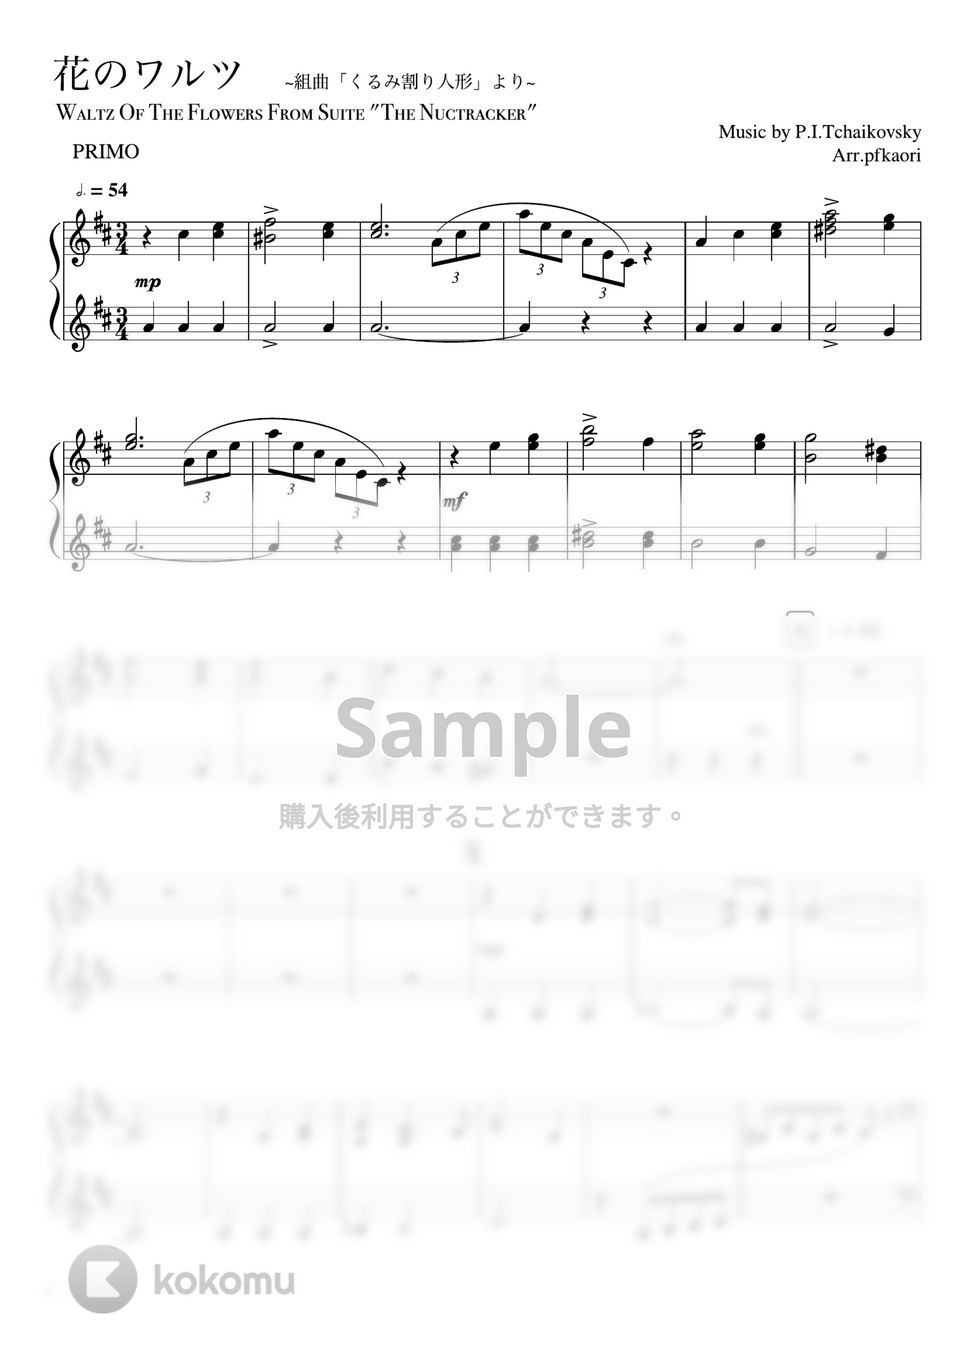 チャイコフスキー - 花のワルツ (ピアノ連弾/中級) by pfkaori